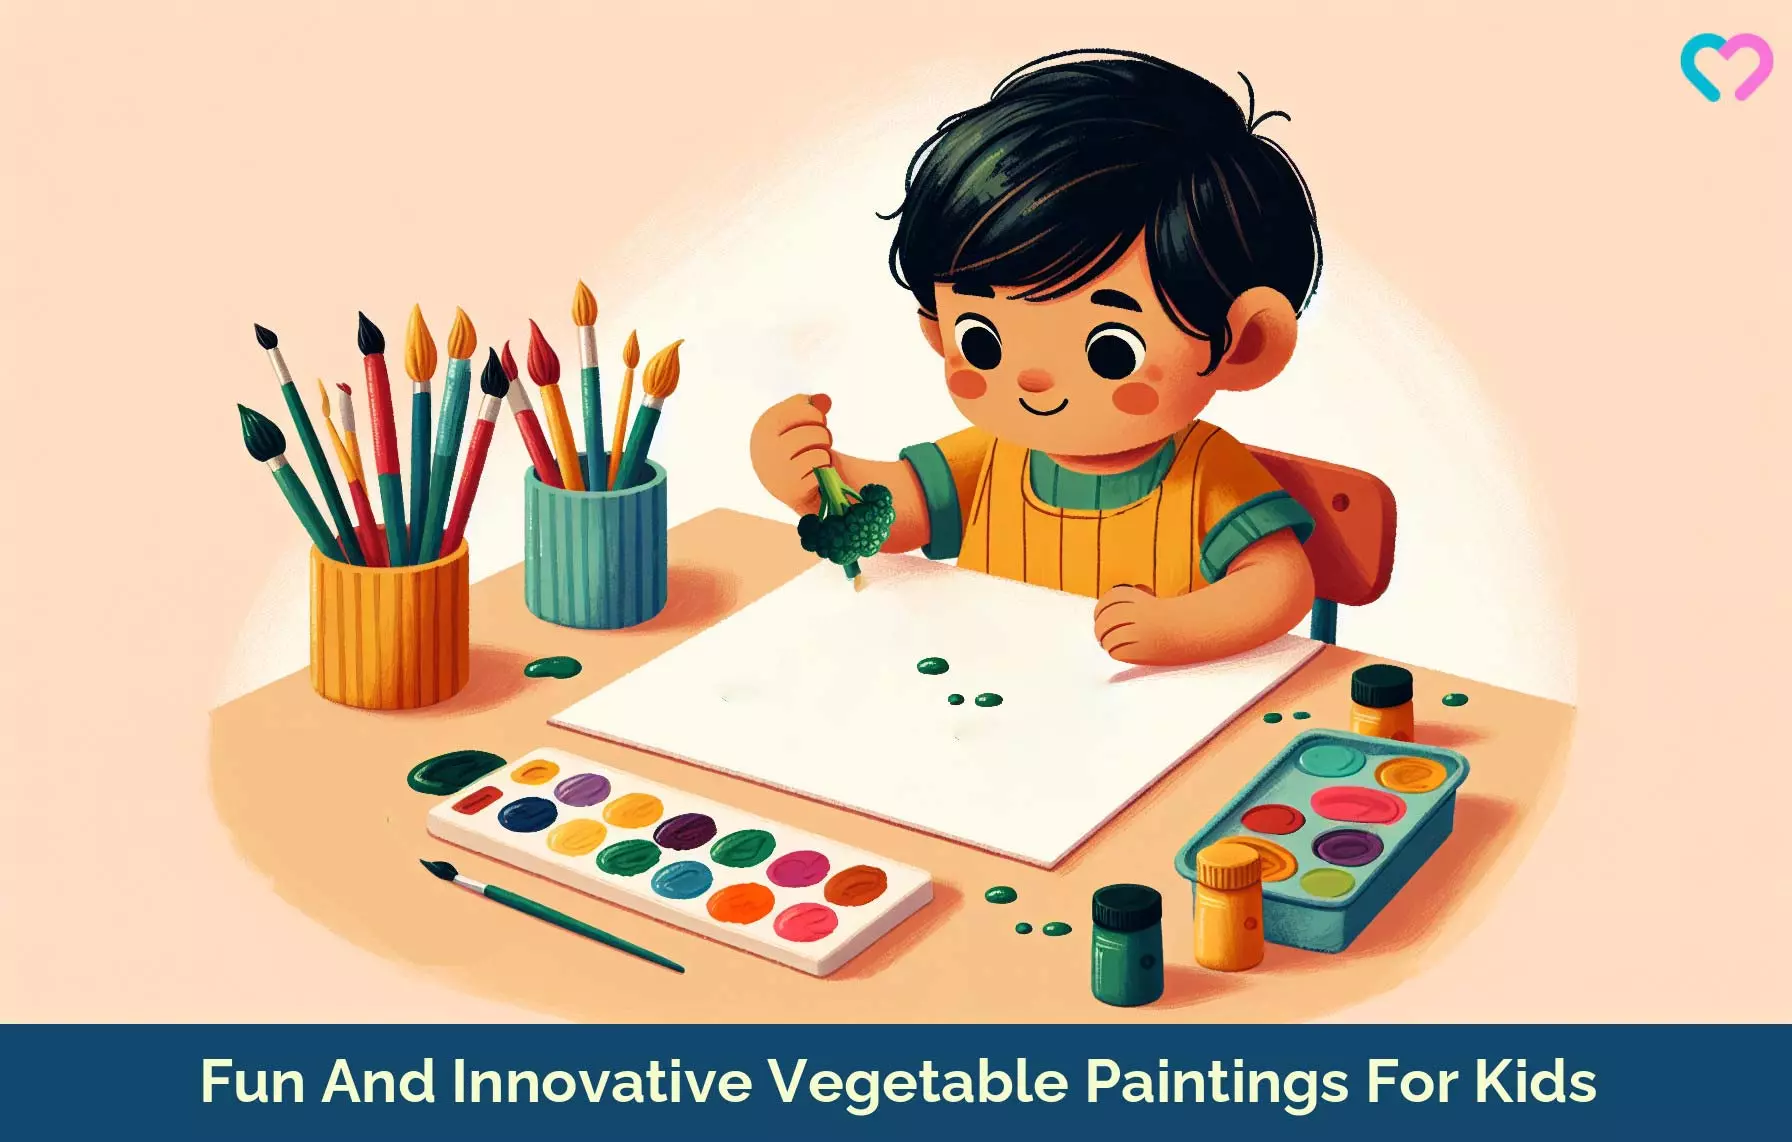 Vegetable Paintings For Kids_illustration